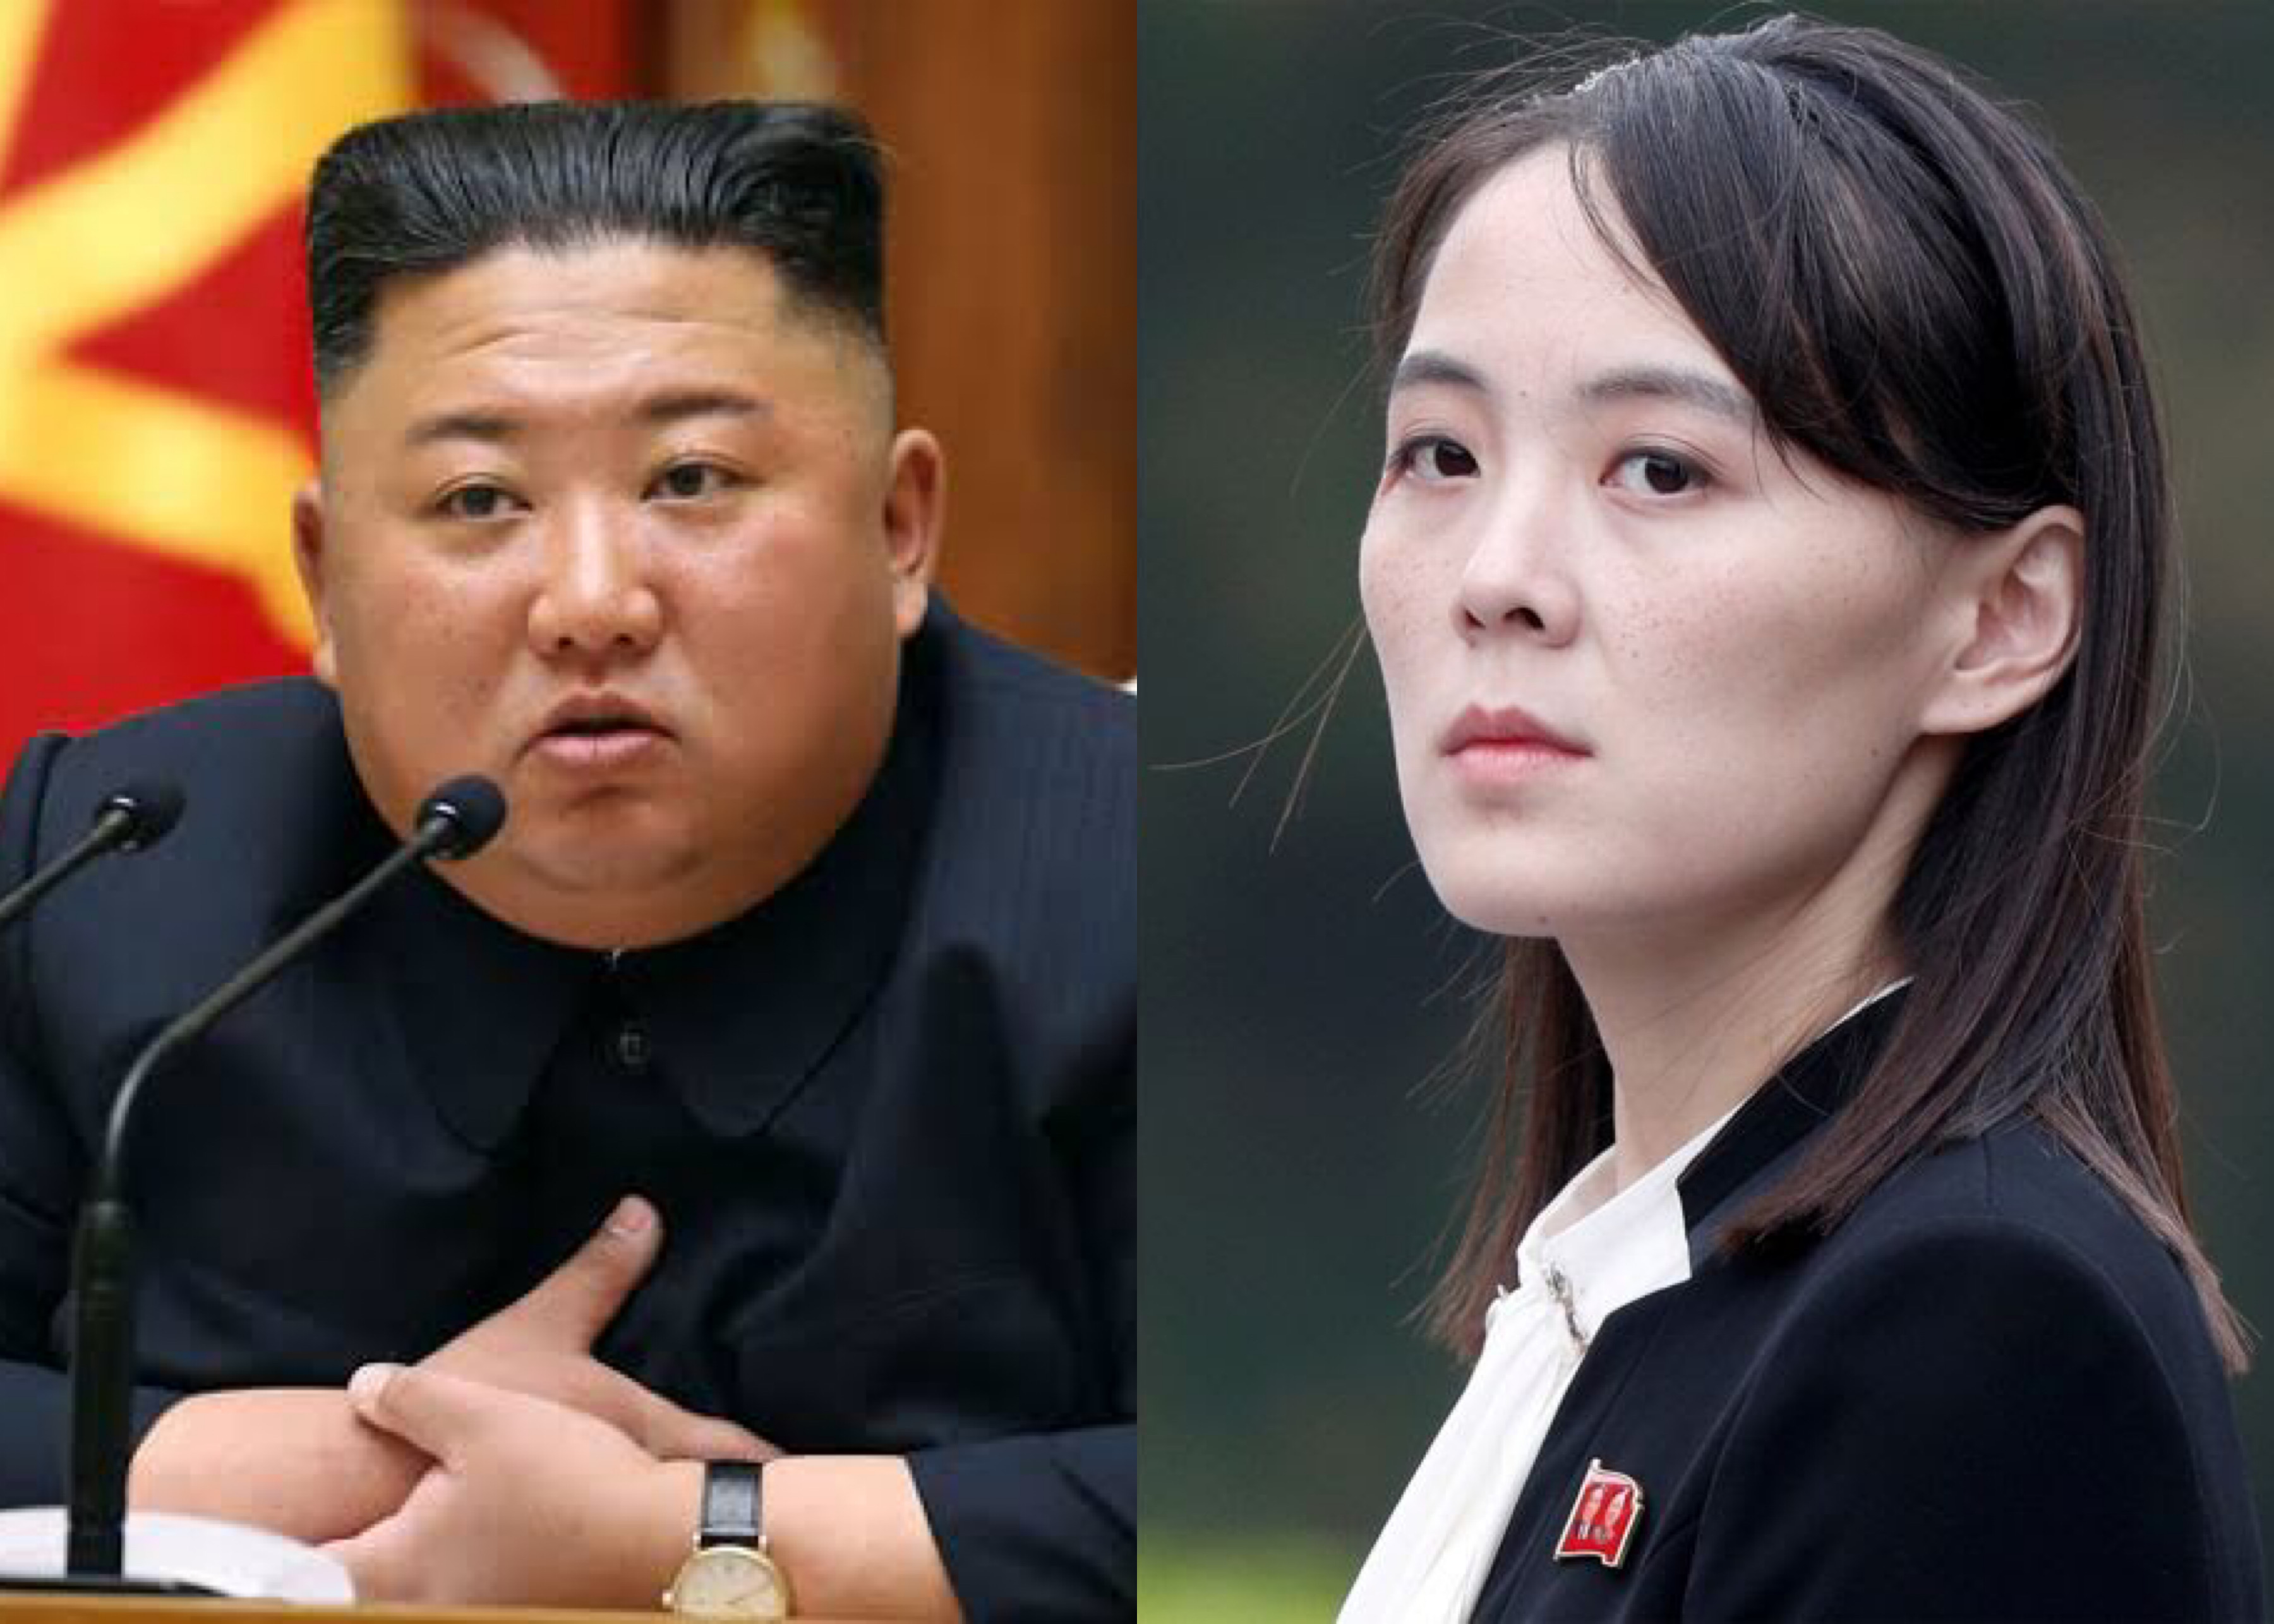 Kim Jong Un and sister Kim Yo Jong